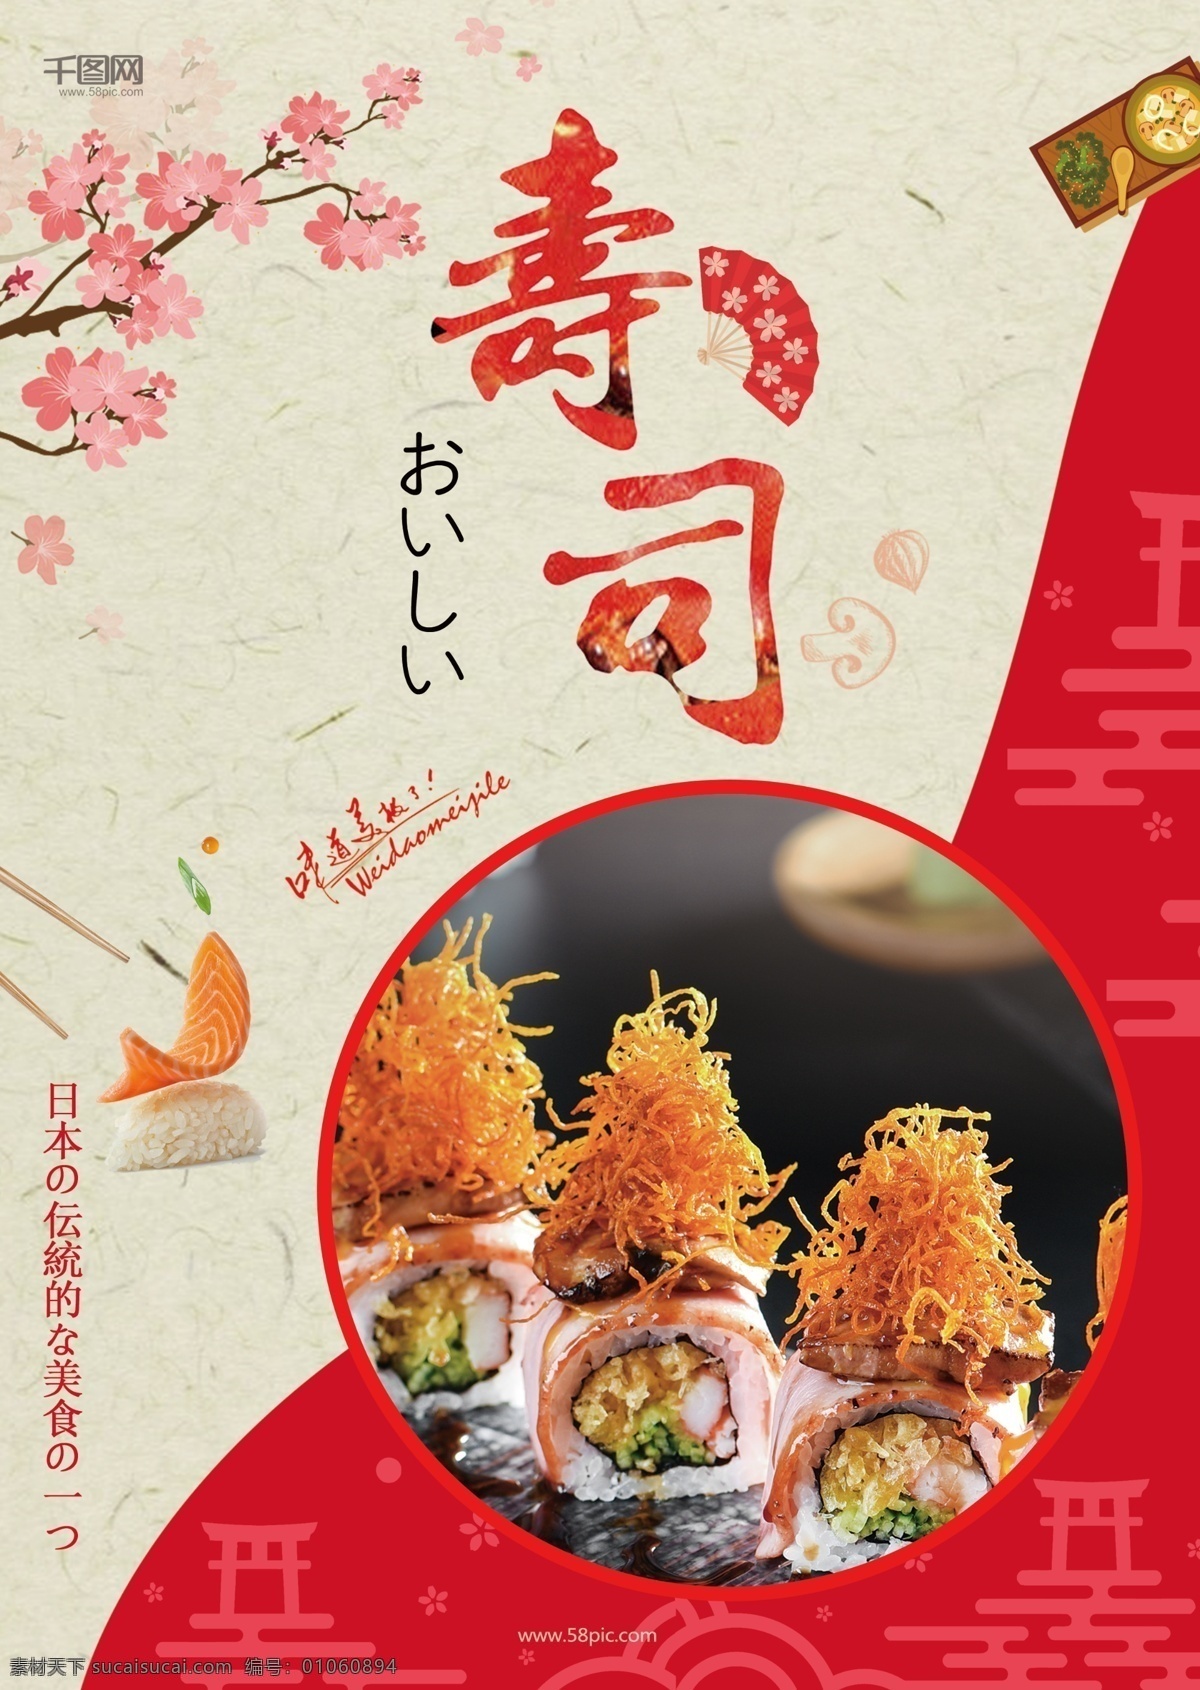 红色 日式 寿司 美食 dm 传单 简约 美食dm单 特色美食 樱花 寿司传单